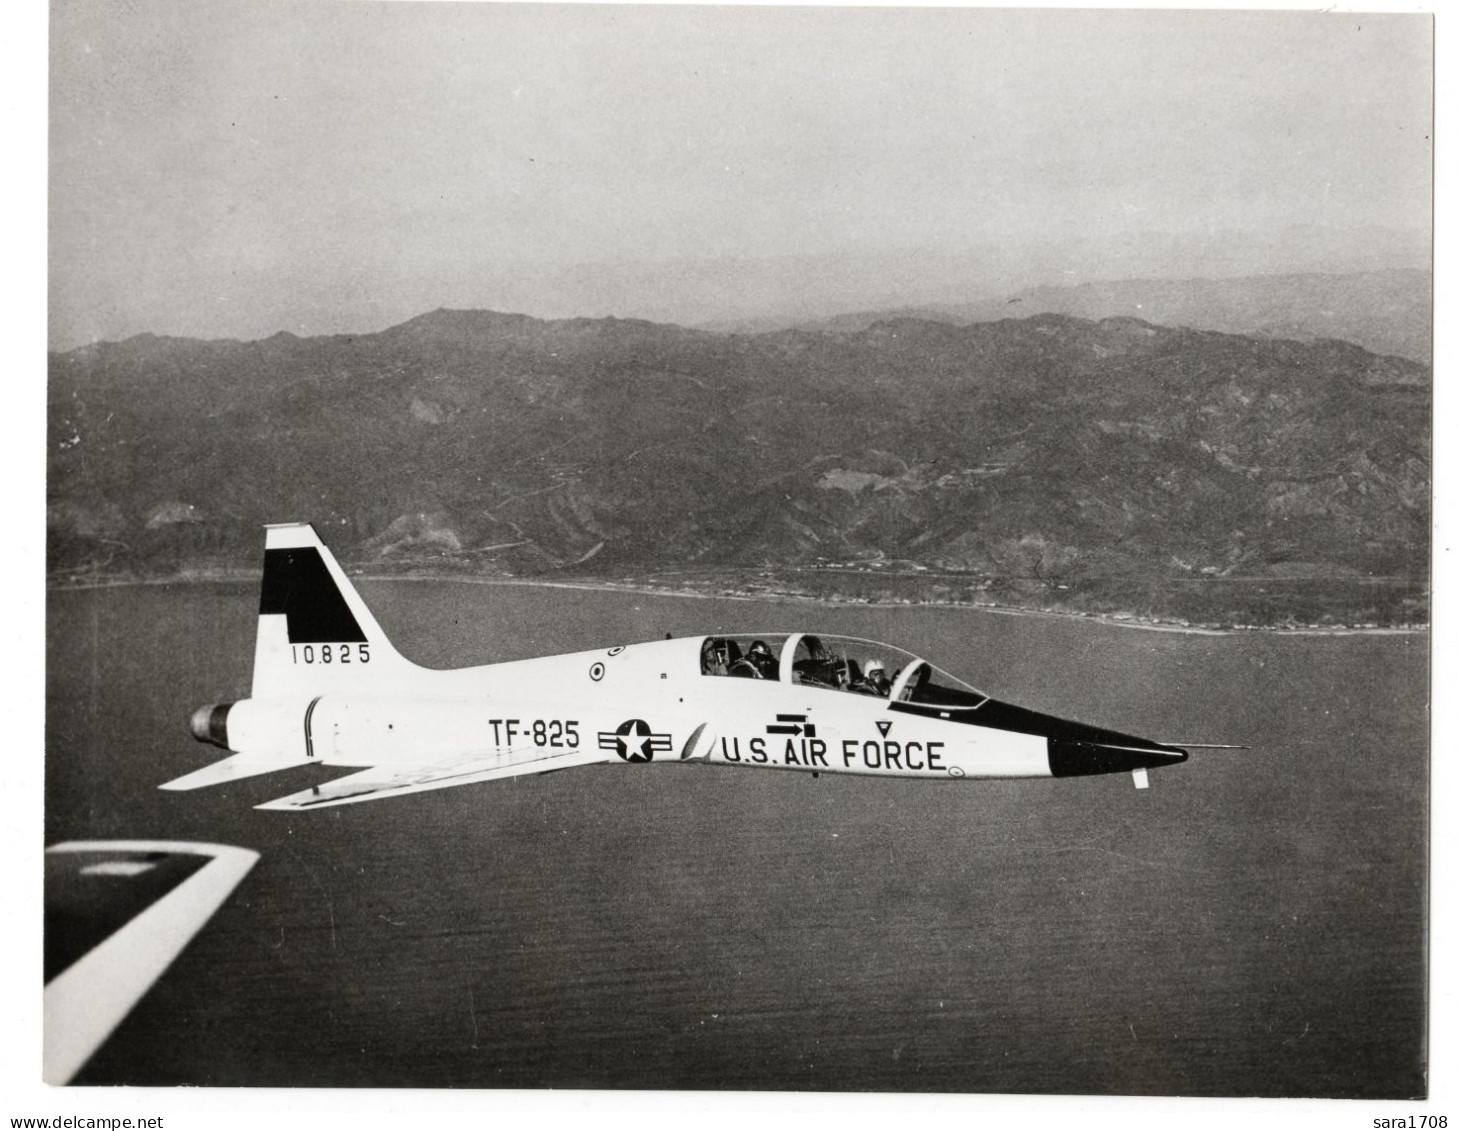 NORTHROP T-38 TRAINER, 1er Avion Supersonique.N° TF-825, Année 1960. Voir Toutes Mes Annonces Sur NORTHROP. 2 SCAN. - Aviazione